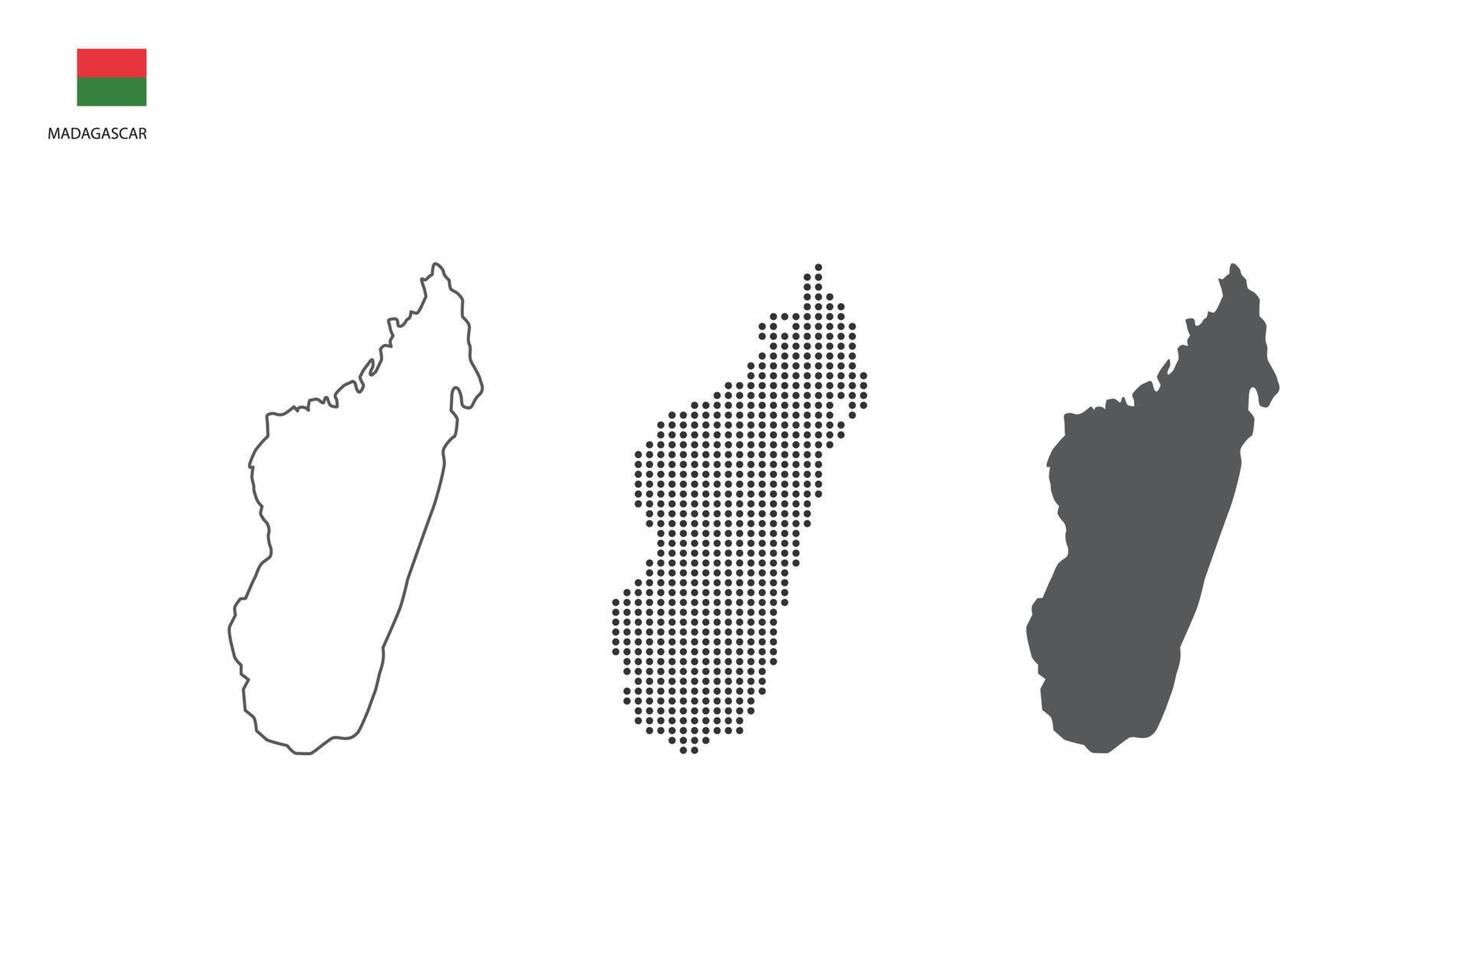 3 versiones del vector de la ciudad del mapa de madagascar por estilo de simplicidad de contorno negro delgado, estilo de punto negro y estilo de sombra oscura. todo en el fondo blanco.